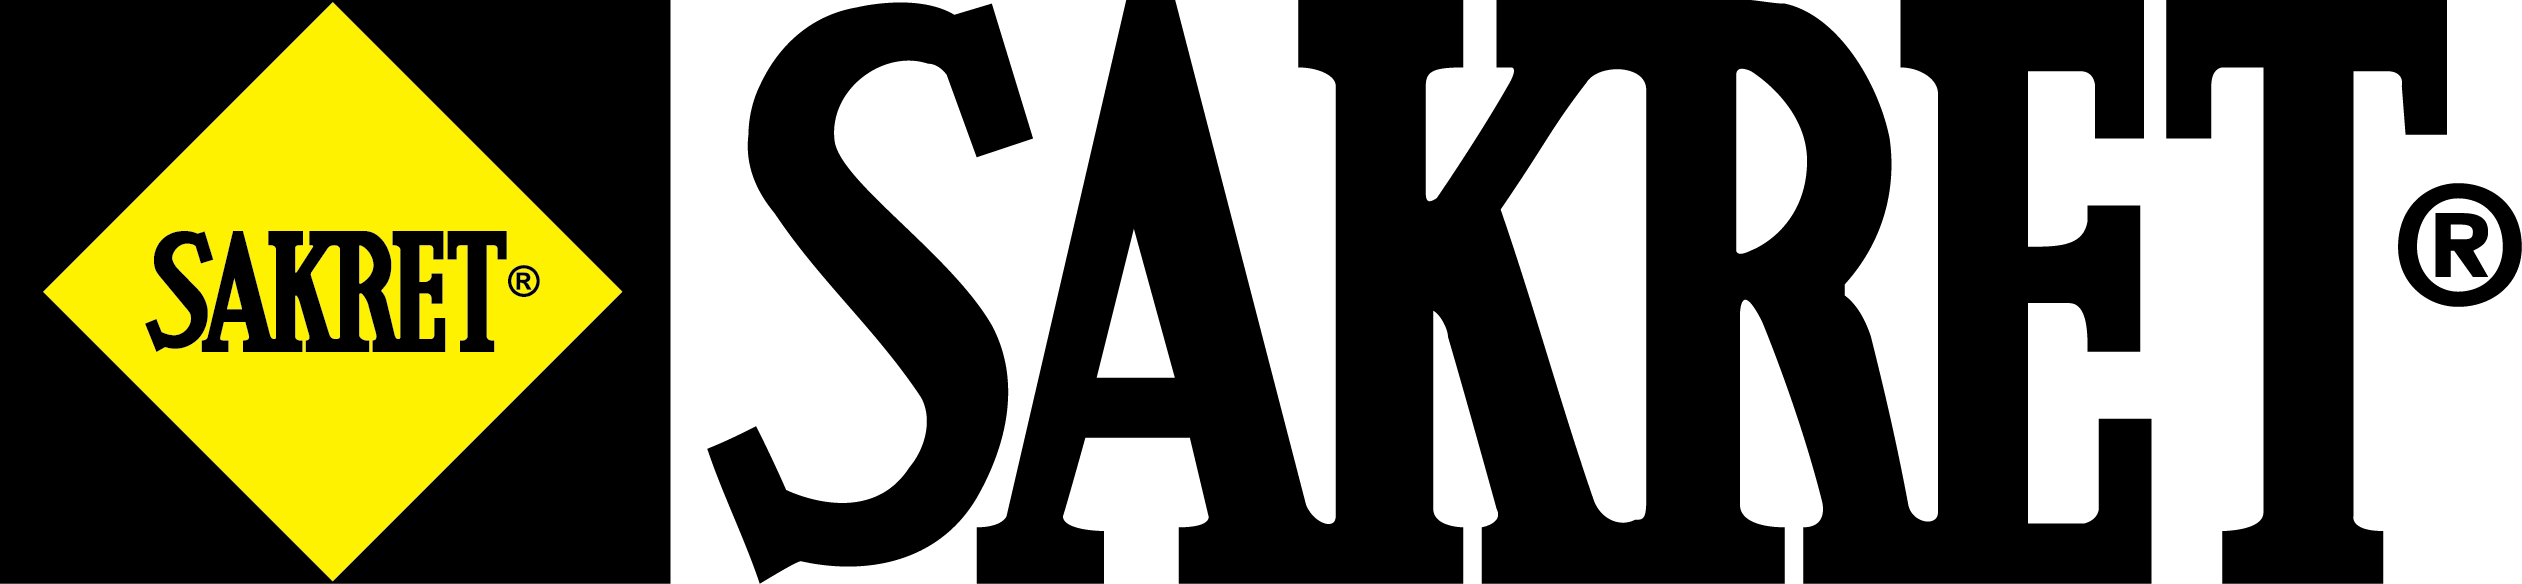 Sakret logo